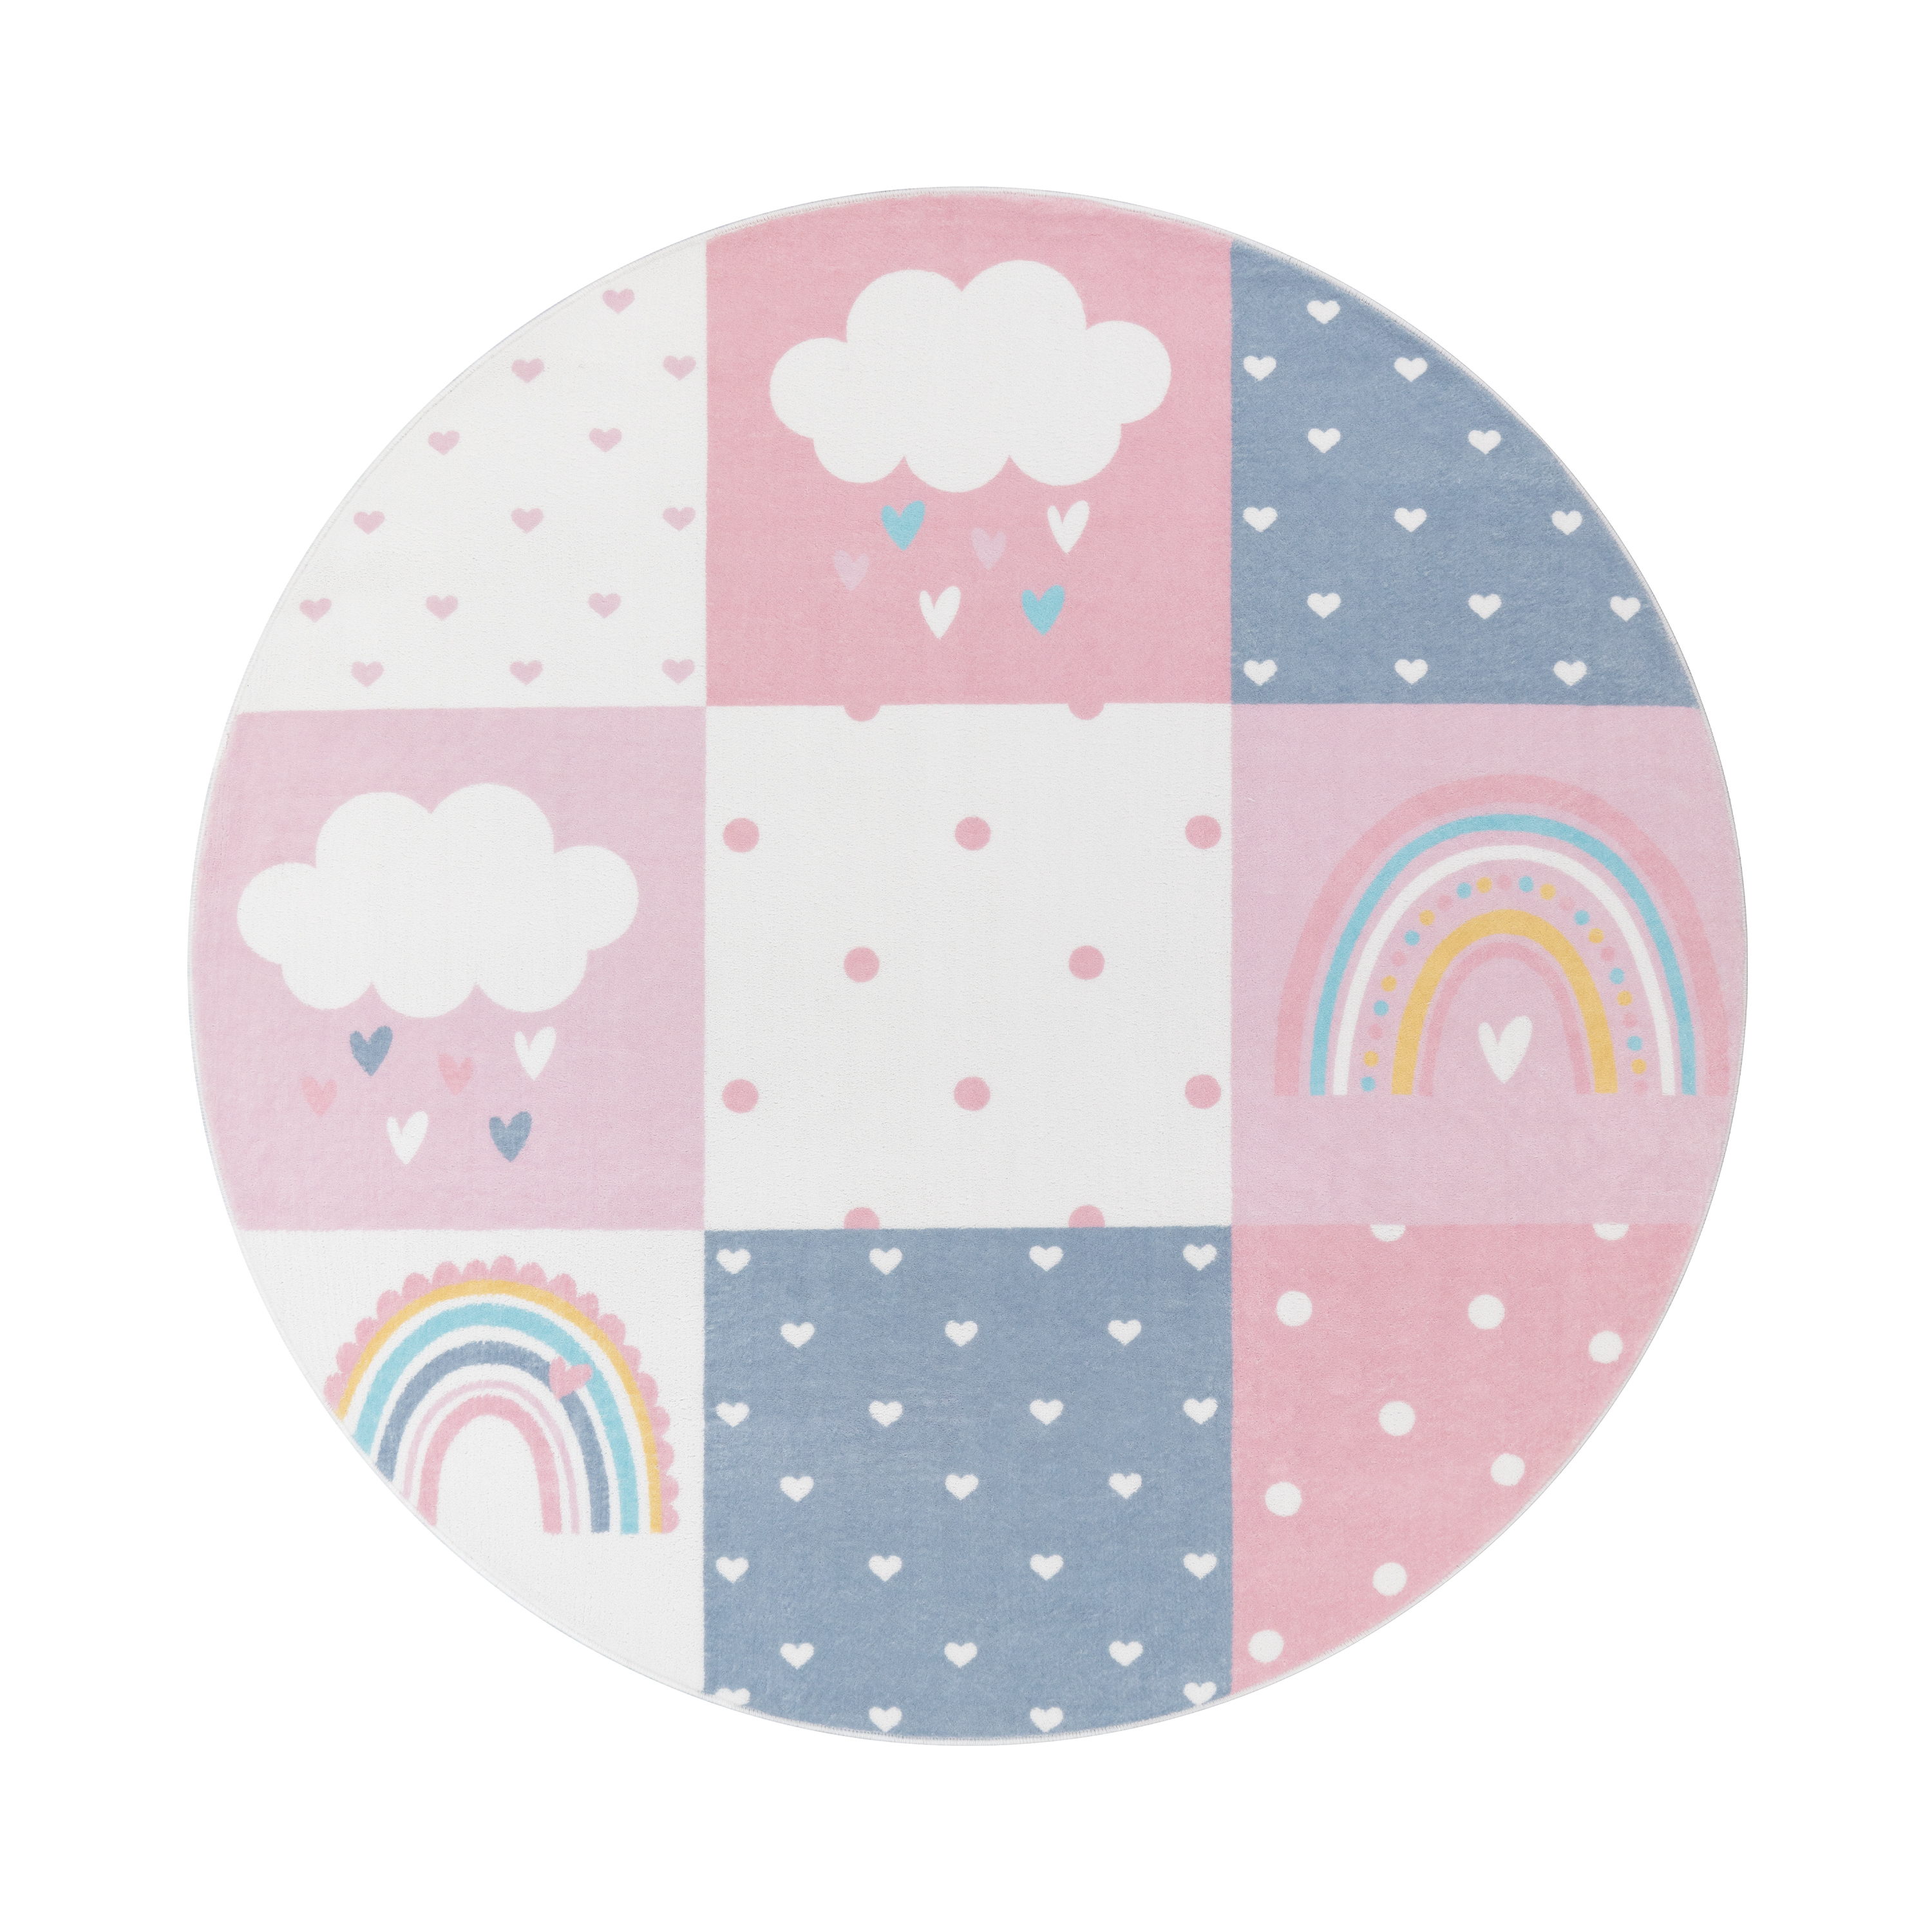 Spielteppich Für Kinder mit Regenbogen Motiv Pink Kind